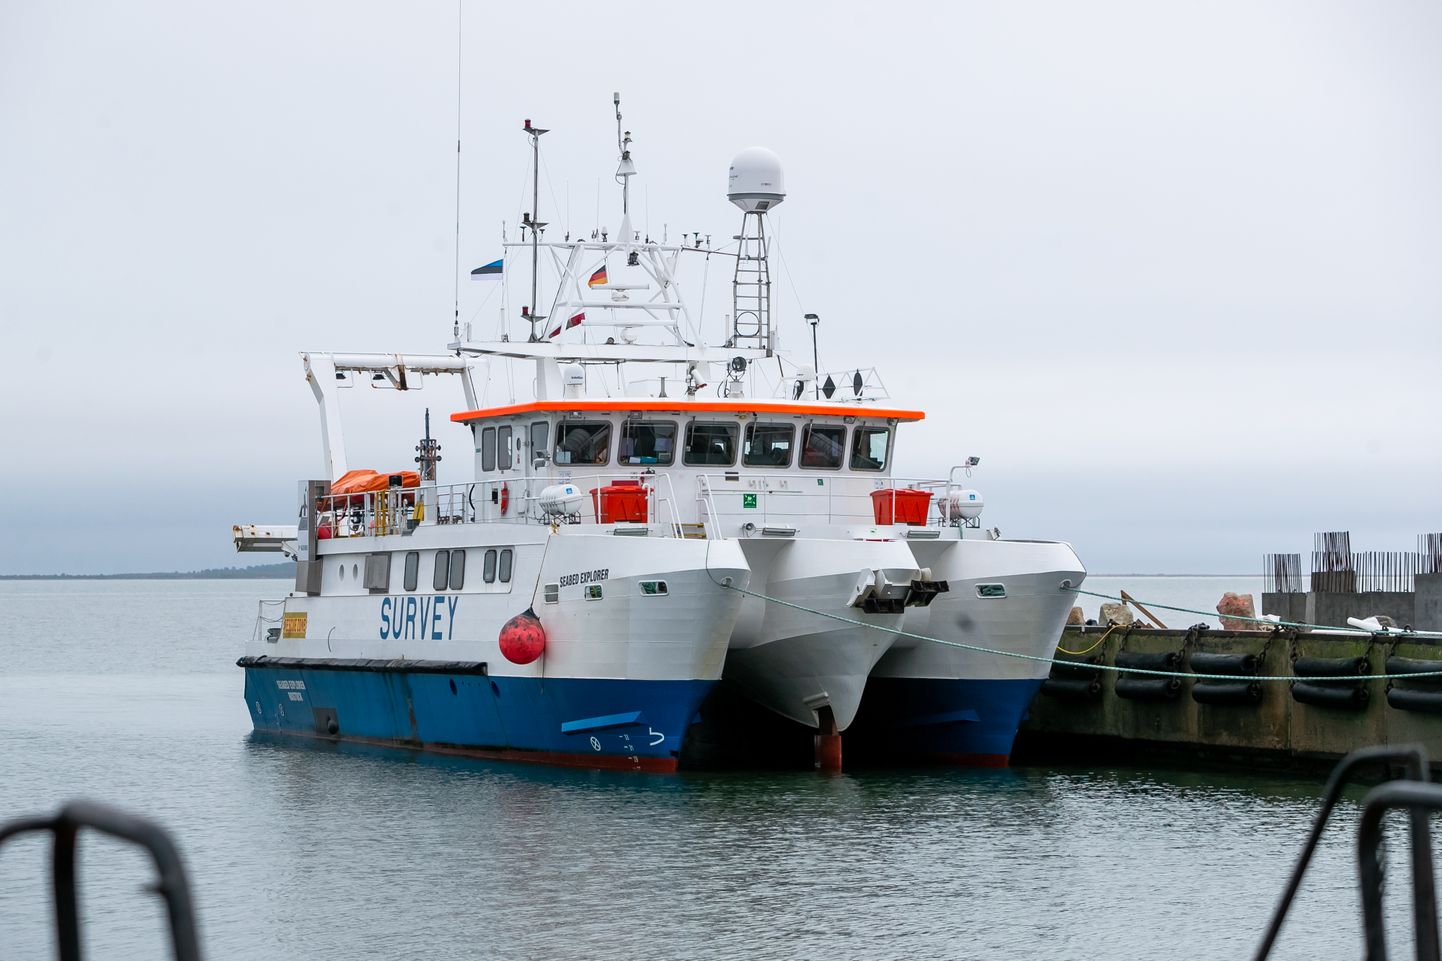 UURIB MEREPÕHJA: Saksa lipu all seilaval uurimislaeval Seabed Explorer tehakse Saaremaa vetes merepõhja uurimistöid.